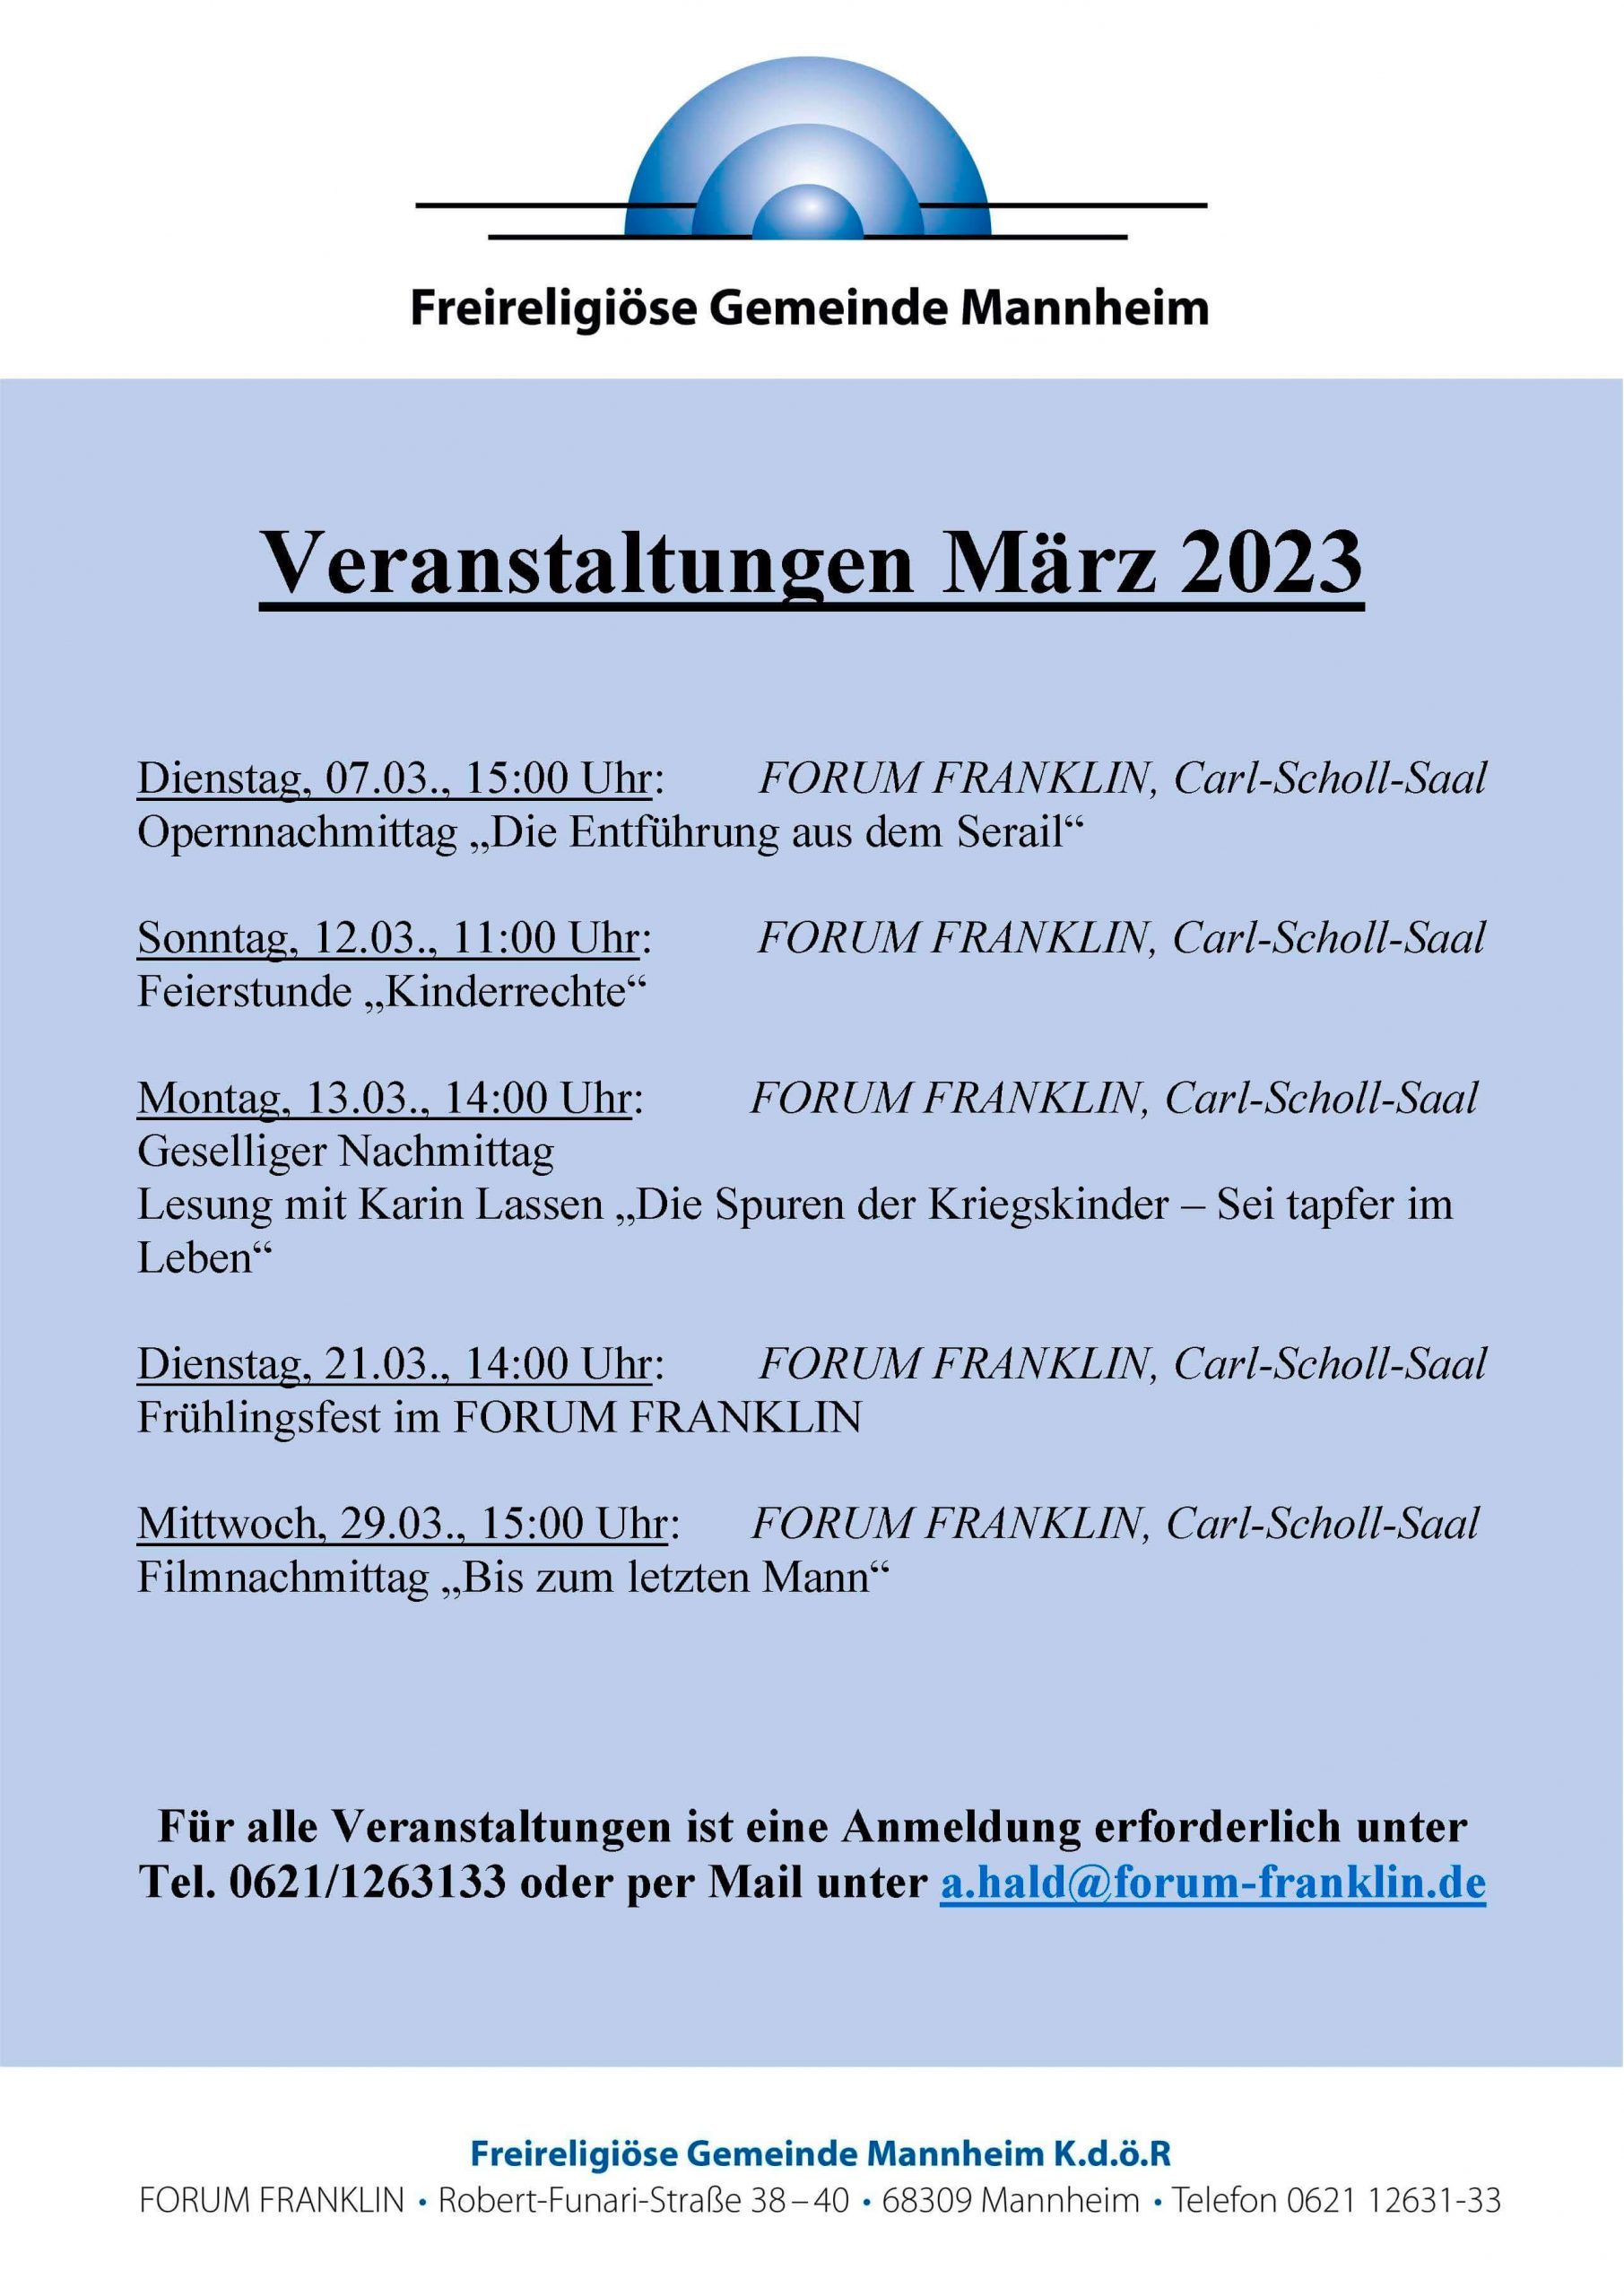 FORUM FRANKLIN Veranstaltungen März 2023